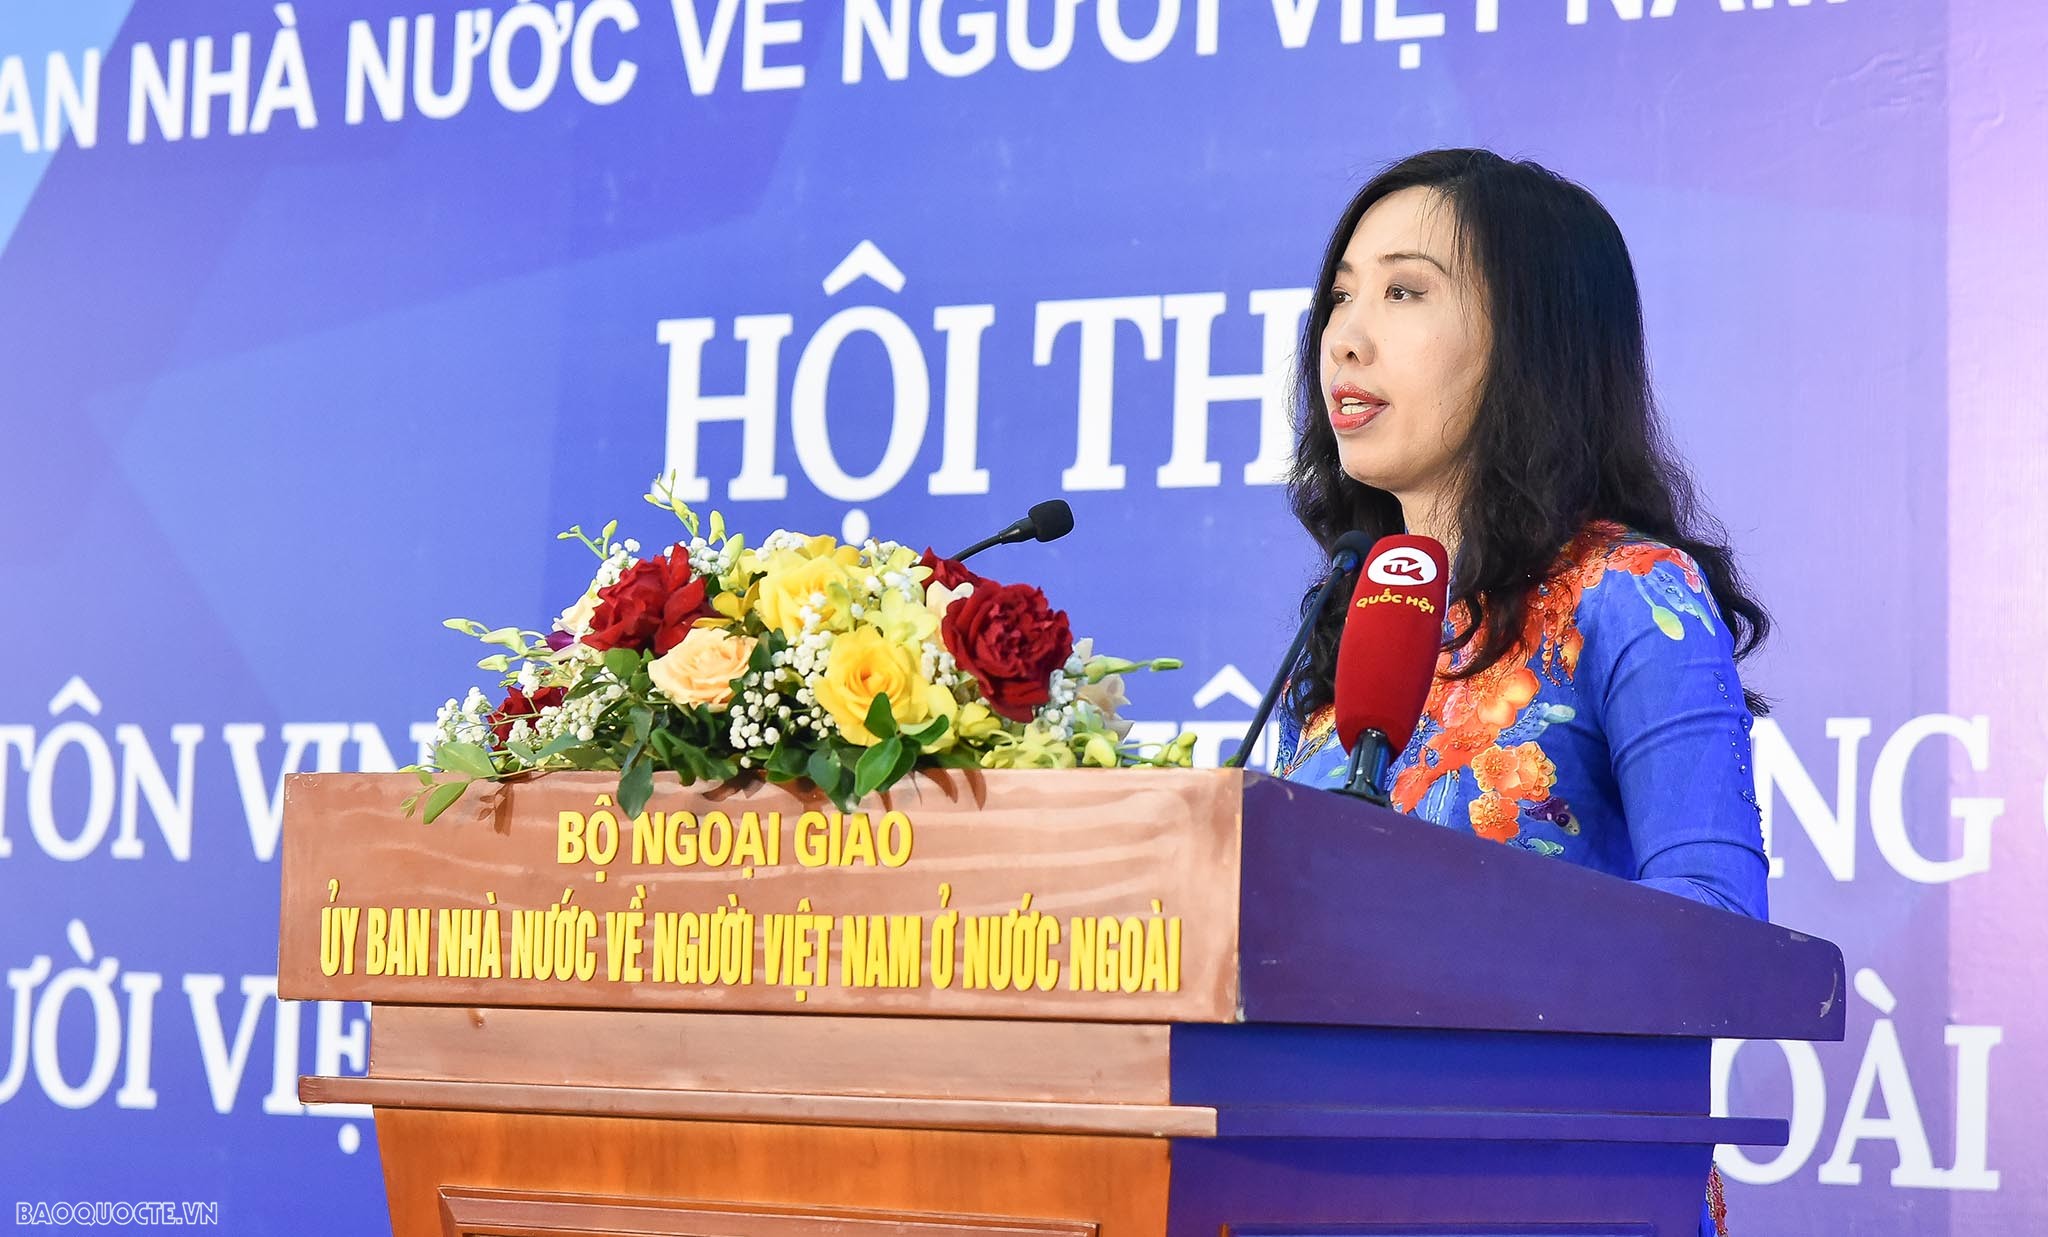 Tiếng Việt - Nhịp cầu thân thương nối liền đồng bào Việt Nam trên thế giới với nhau và với Tổ quốc